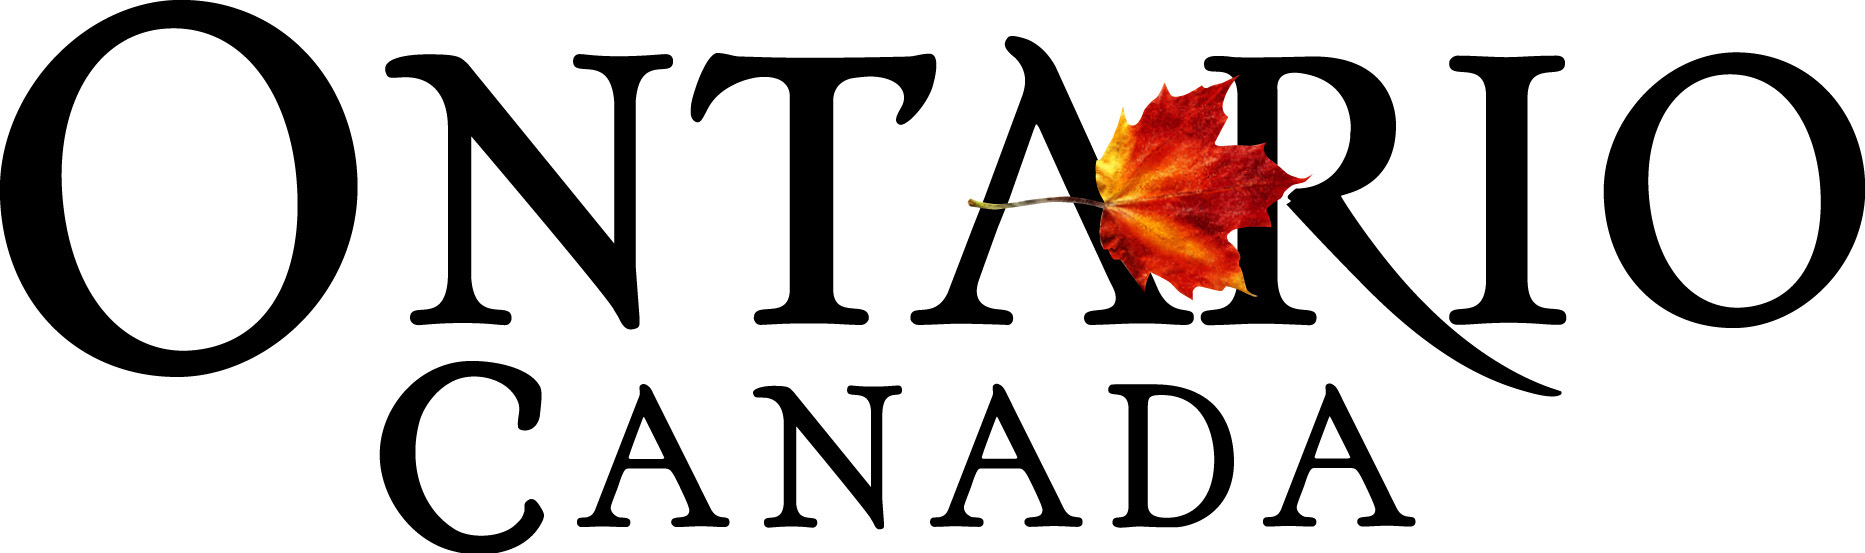 Ontario, Canada logo - four-colour